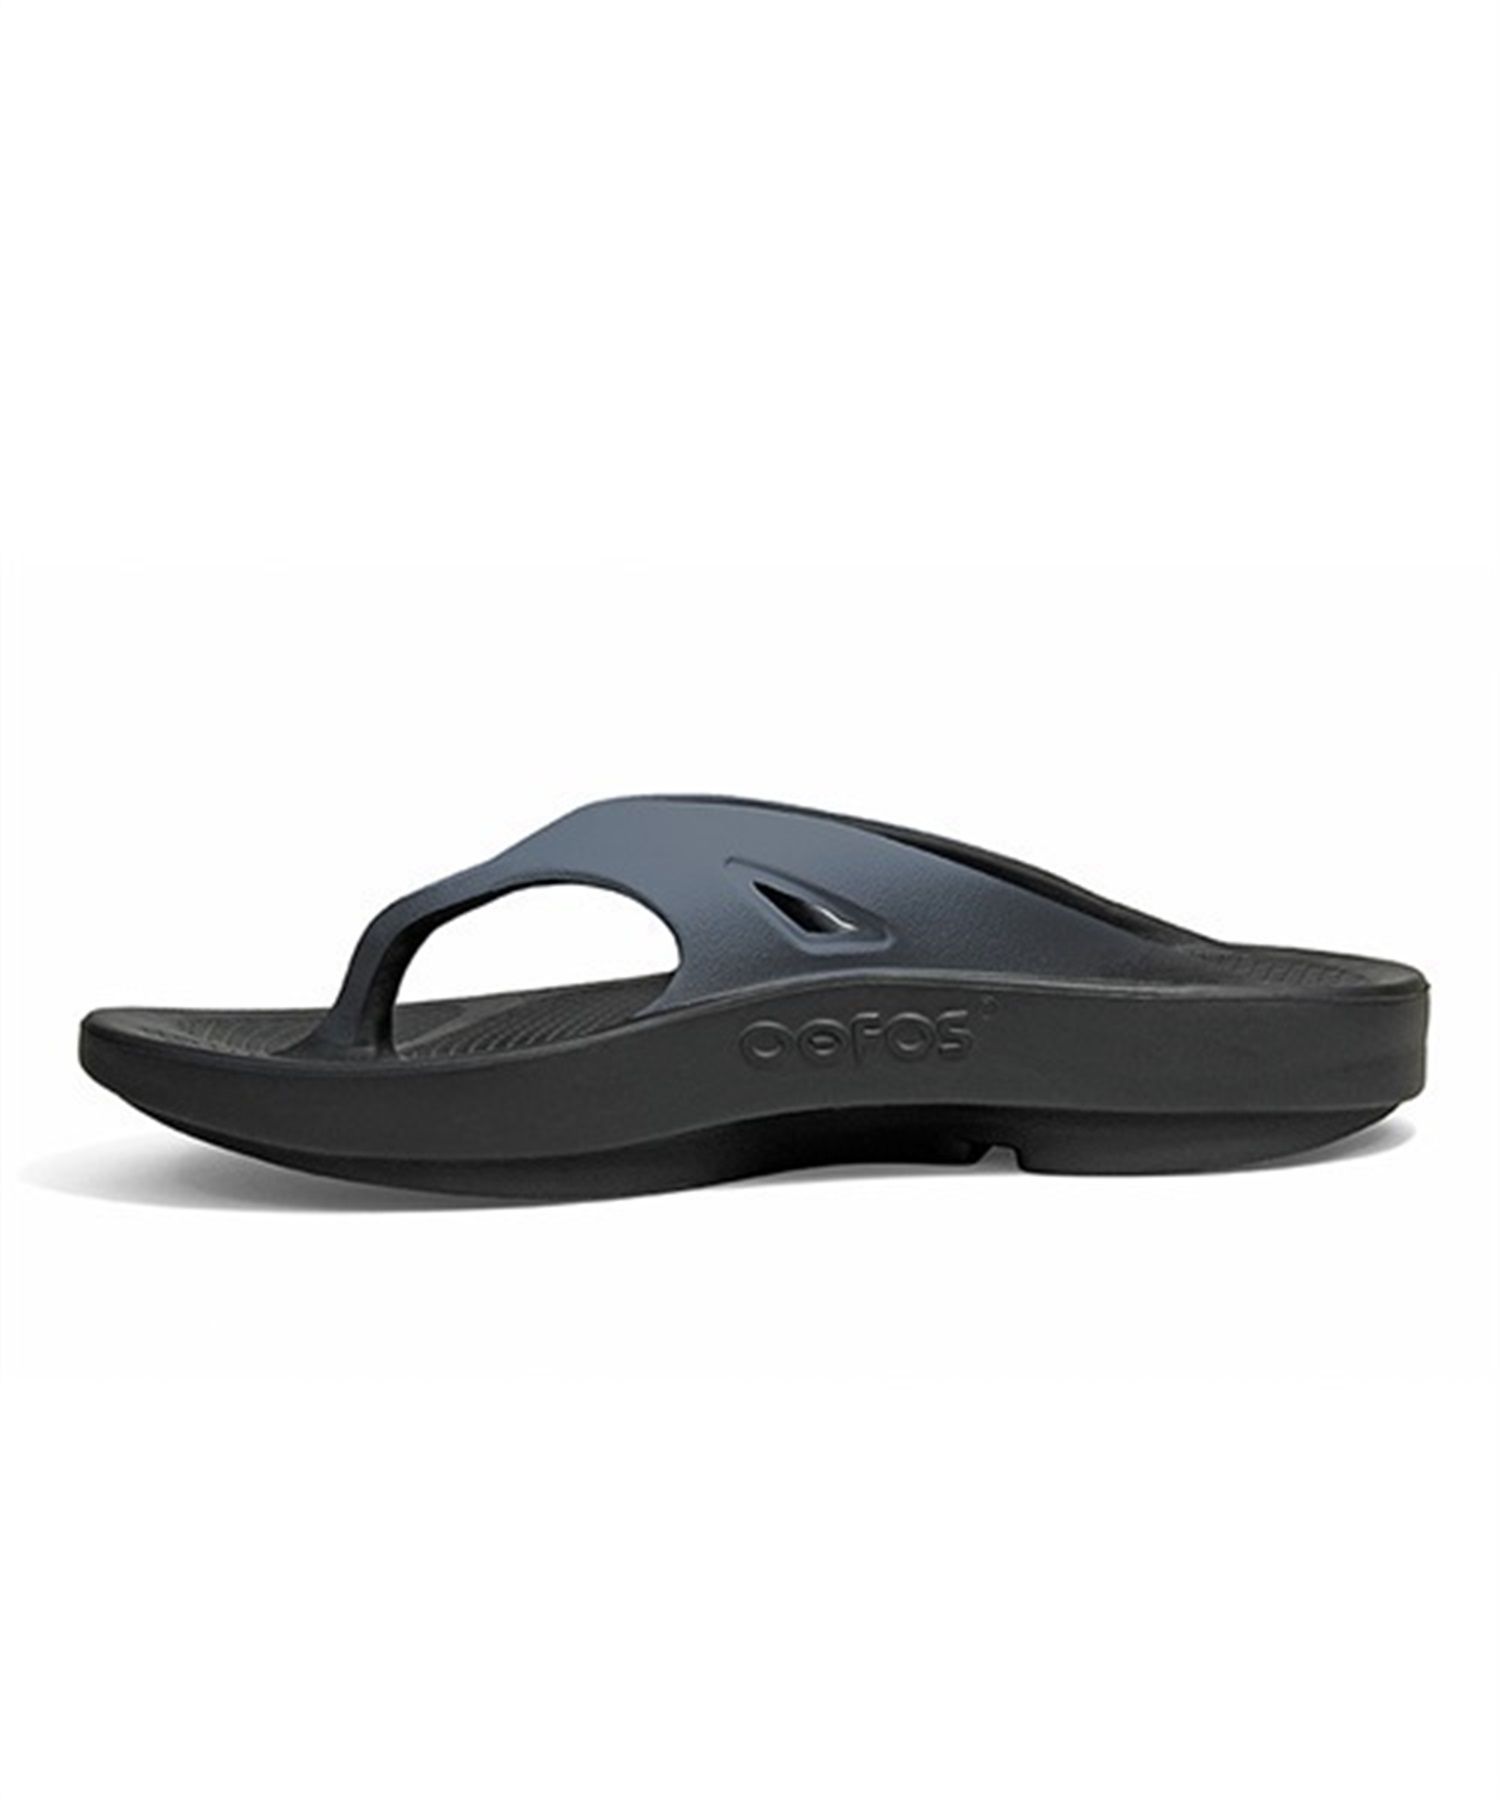 バーゲンブック OOFOS OOriginal black M6W8(25.0cm) - 靴